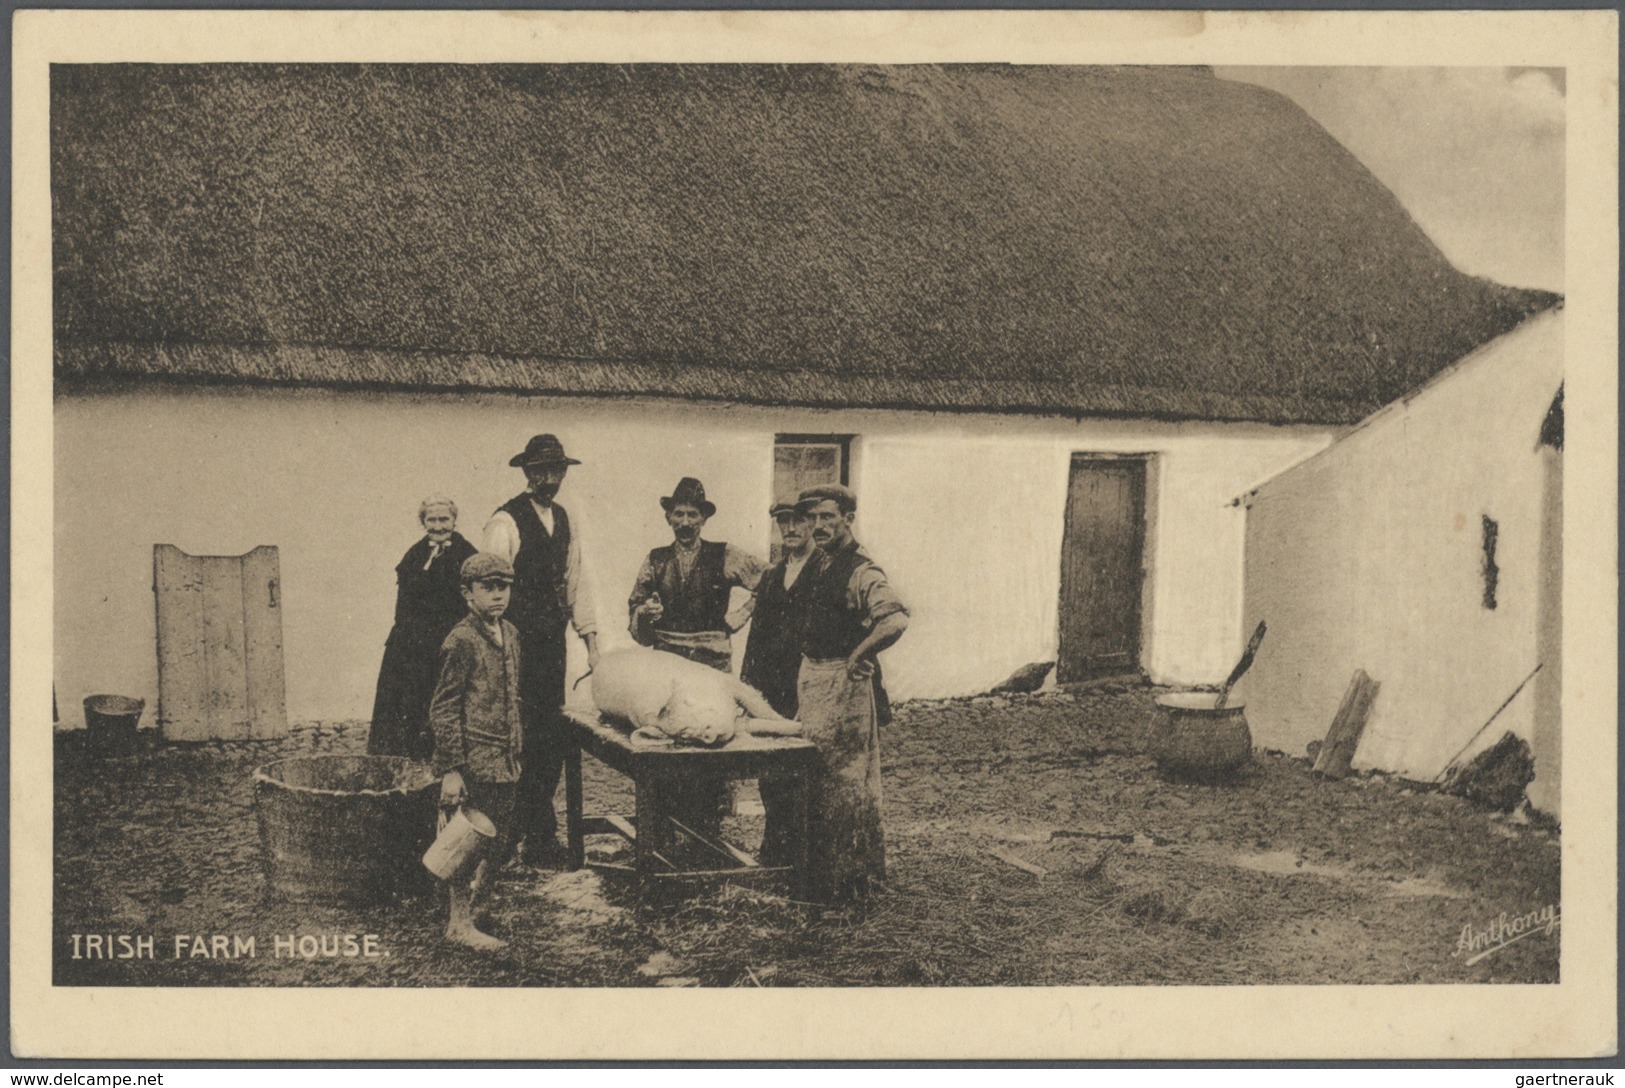 26860 Irland - Besonderheiten: 1900/1960, reichhaltiger Bestand mit über 600 alten Ansichtskarten aus Belf